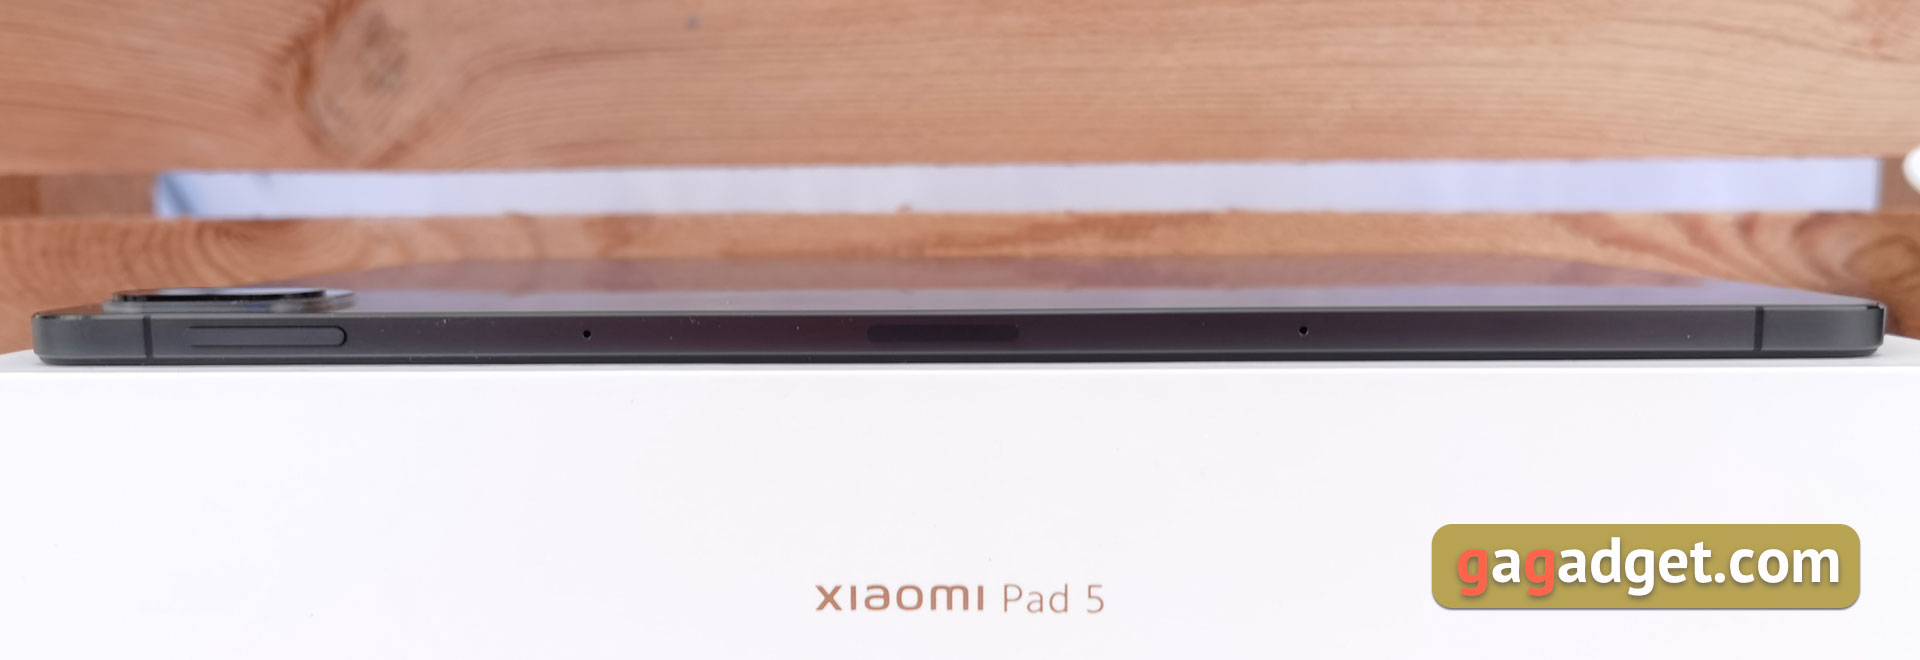 Xiaomi Pad 5 Test: Allesfresser von Content-12